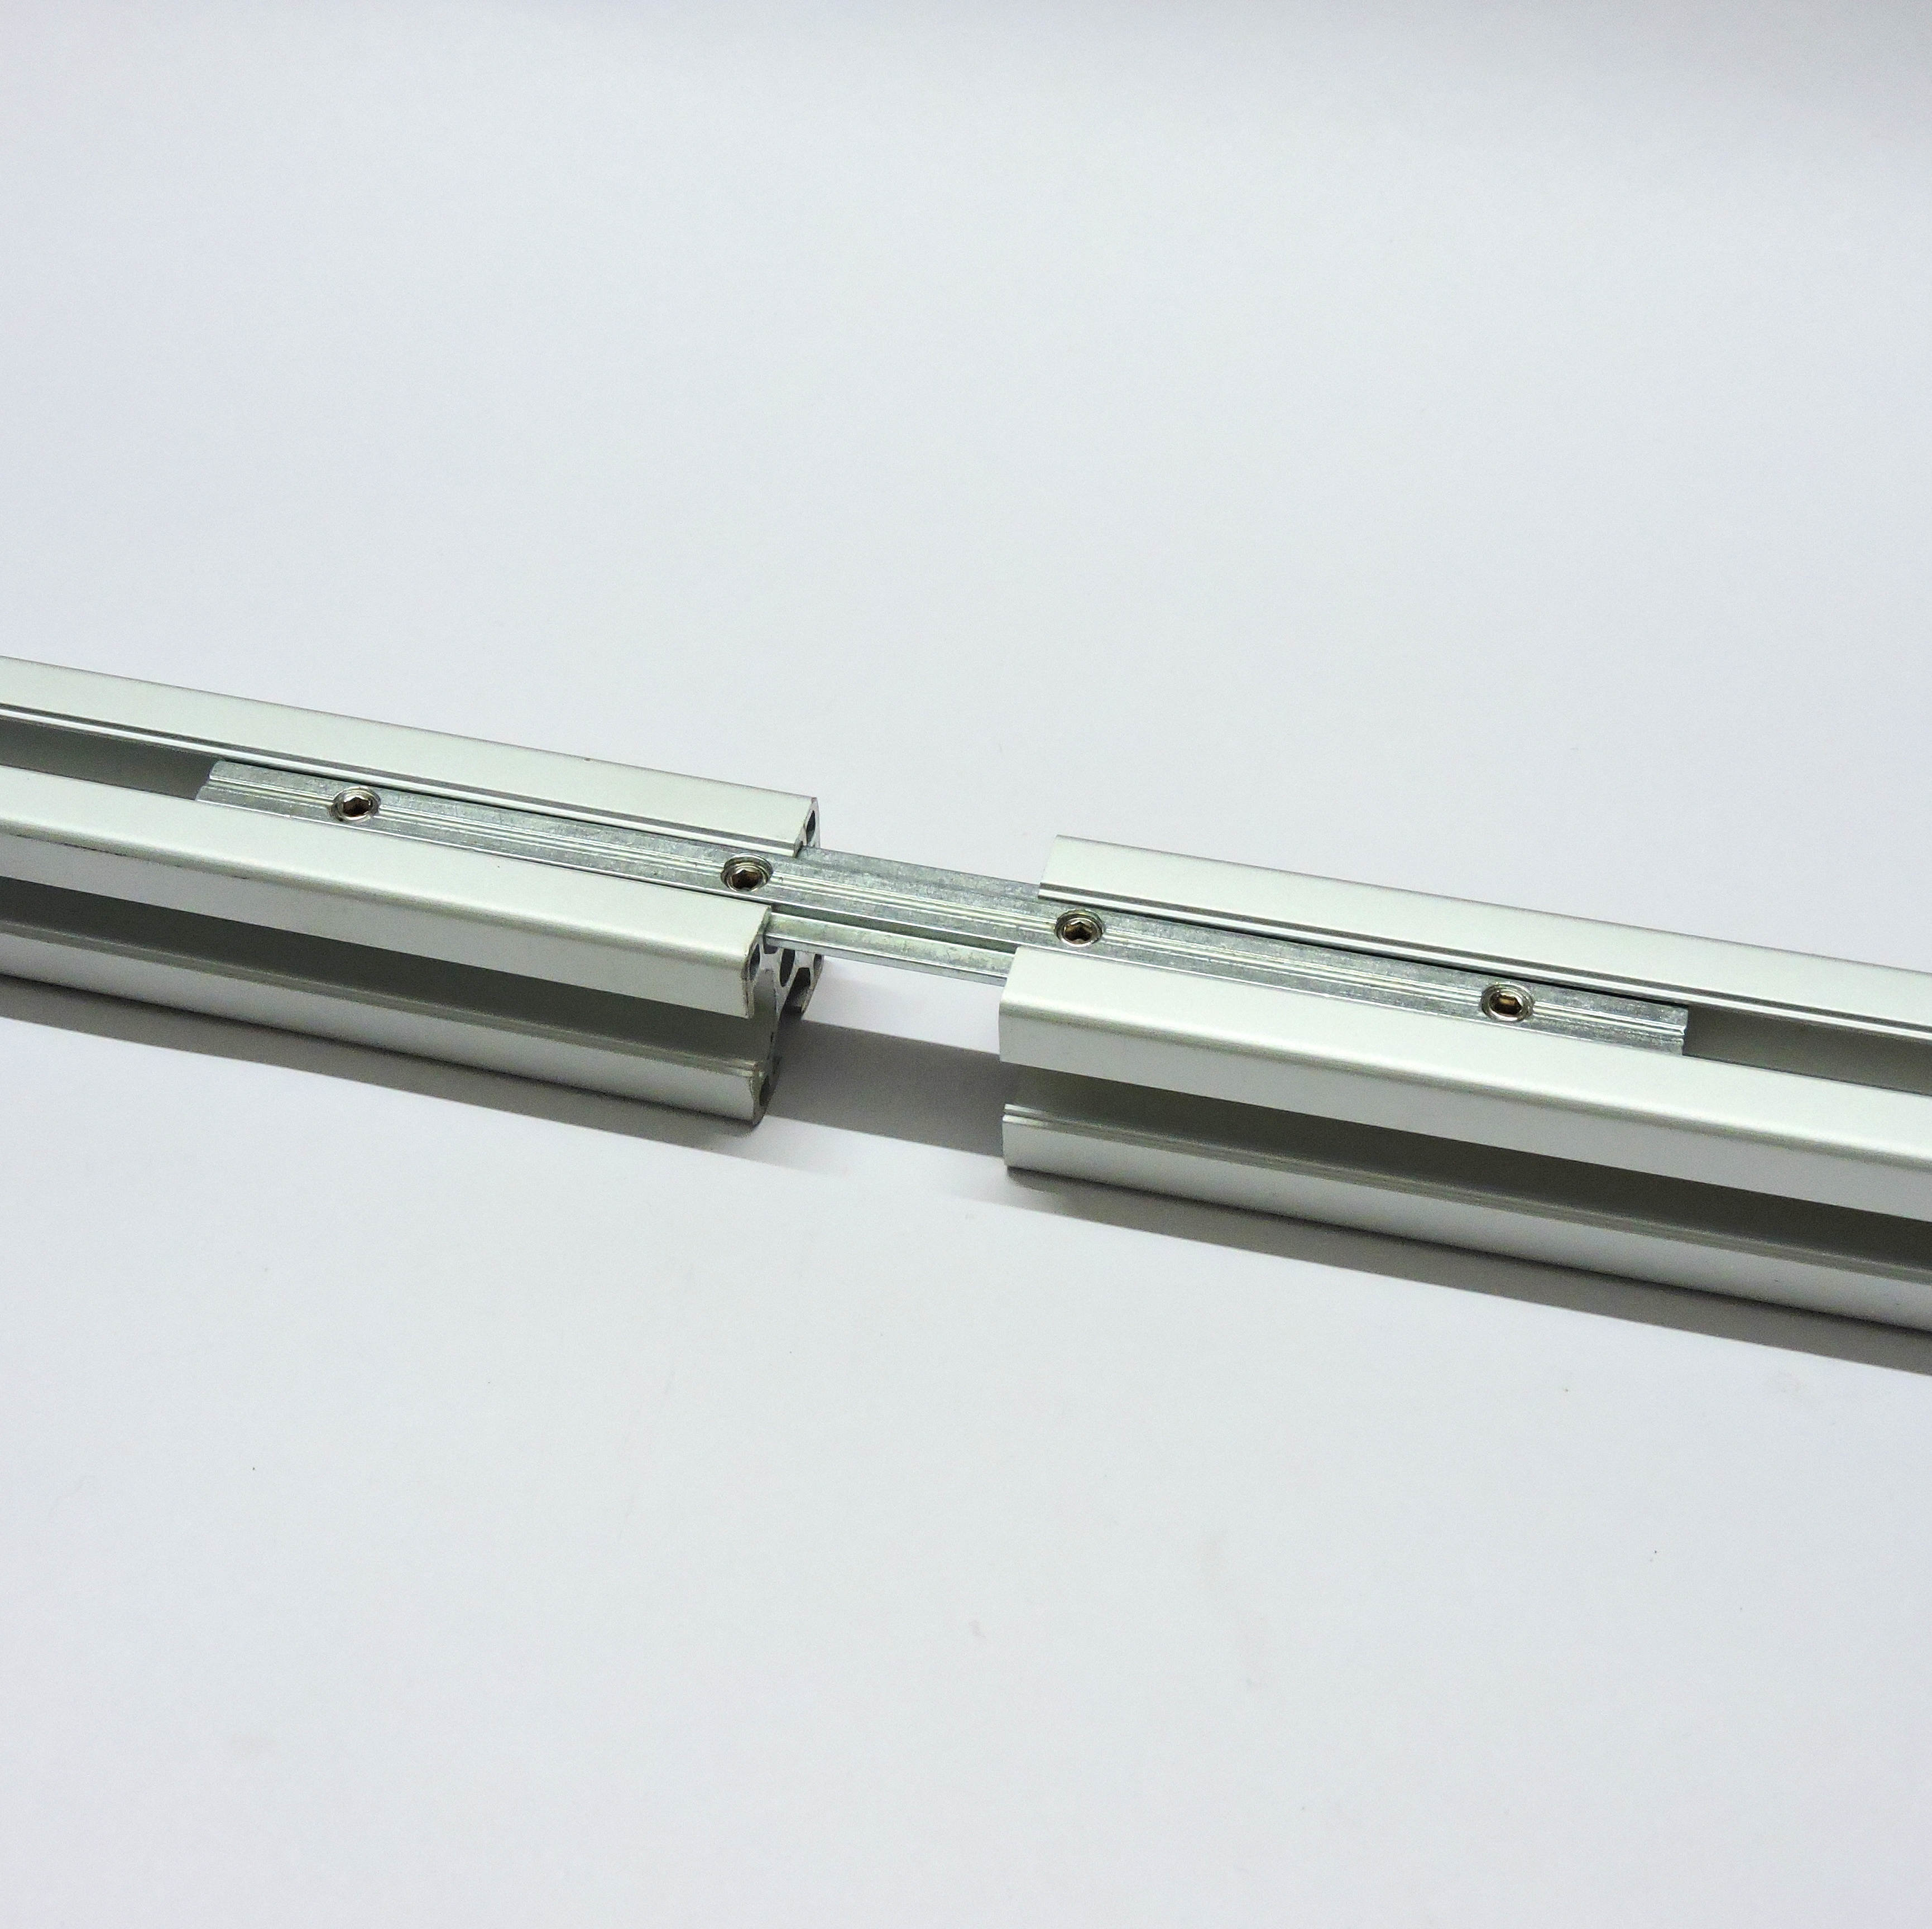 Aluminum Extrusion Linear Rail Channel Bracket for 3D Printer CNC DIY L Shape OTTFF 20 Pcs Aluminum Profile Connectors for 2020 Series 